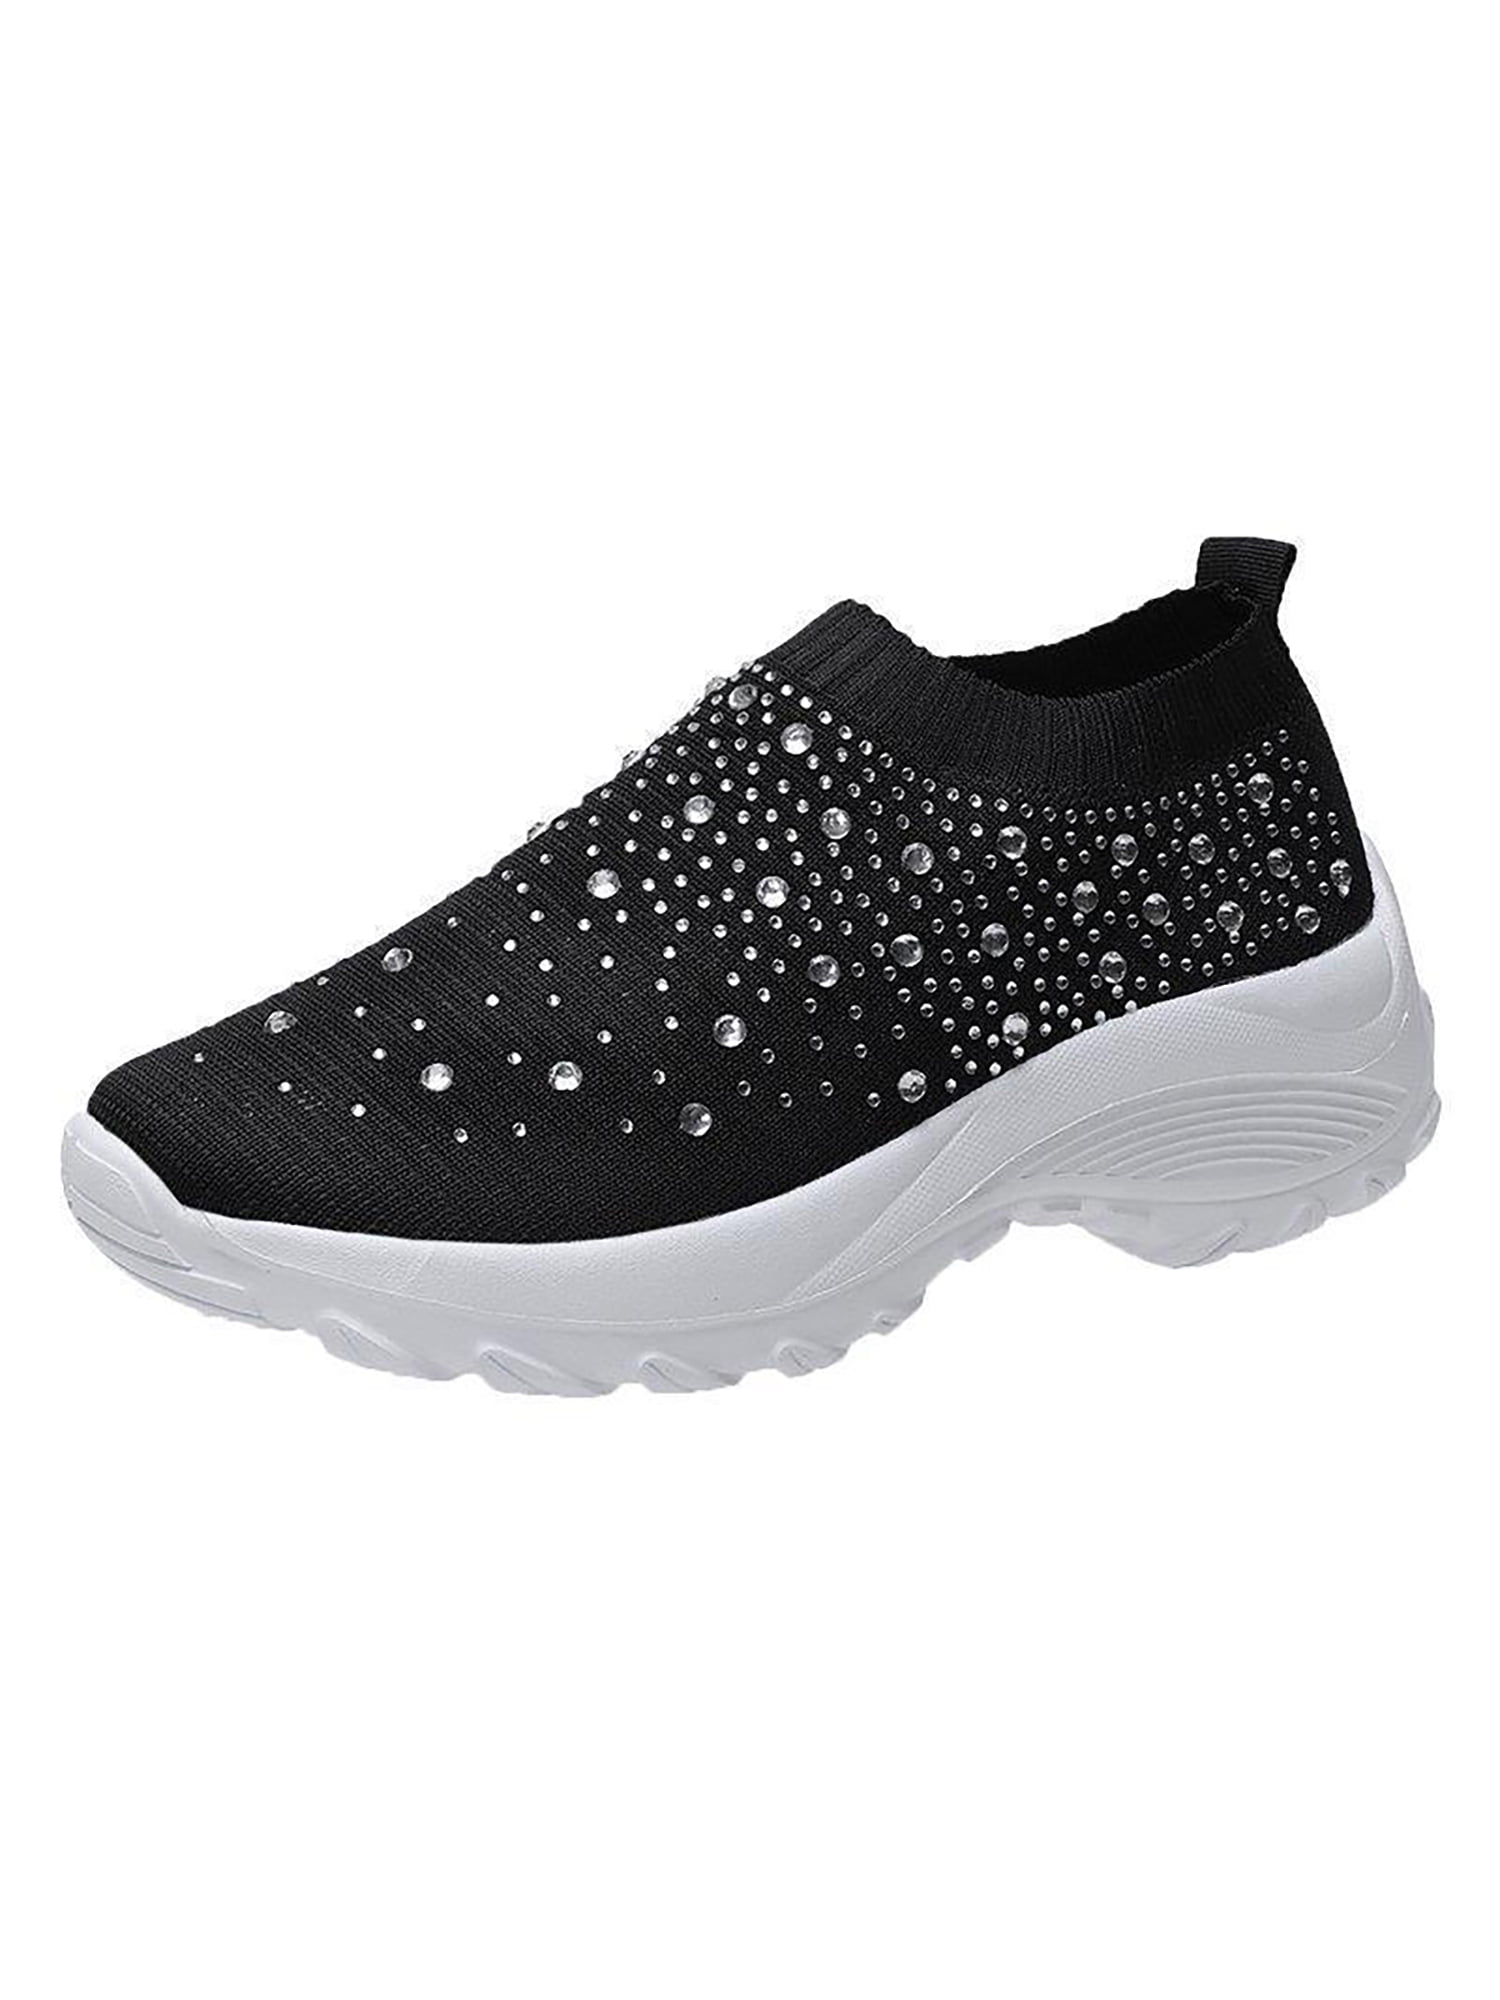 Gomelly Womens Casual Shoes Comfort Sneakers Slip On Flats Lightweight Walking Shoe Women Sneaker Black 5.5 - Walmart.com